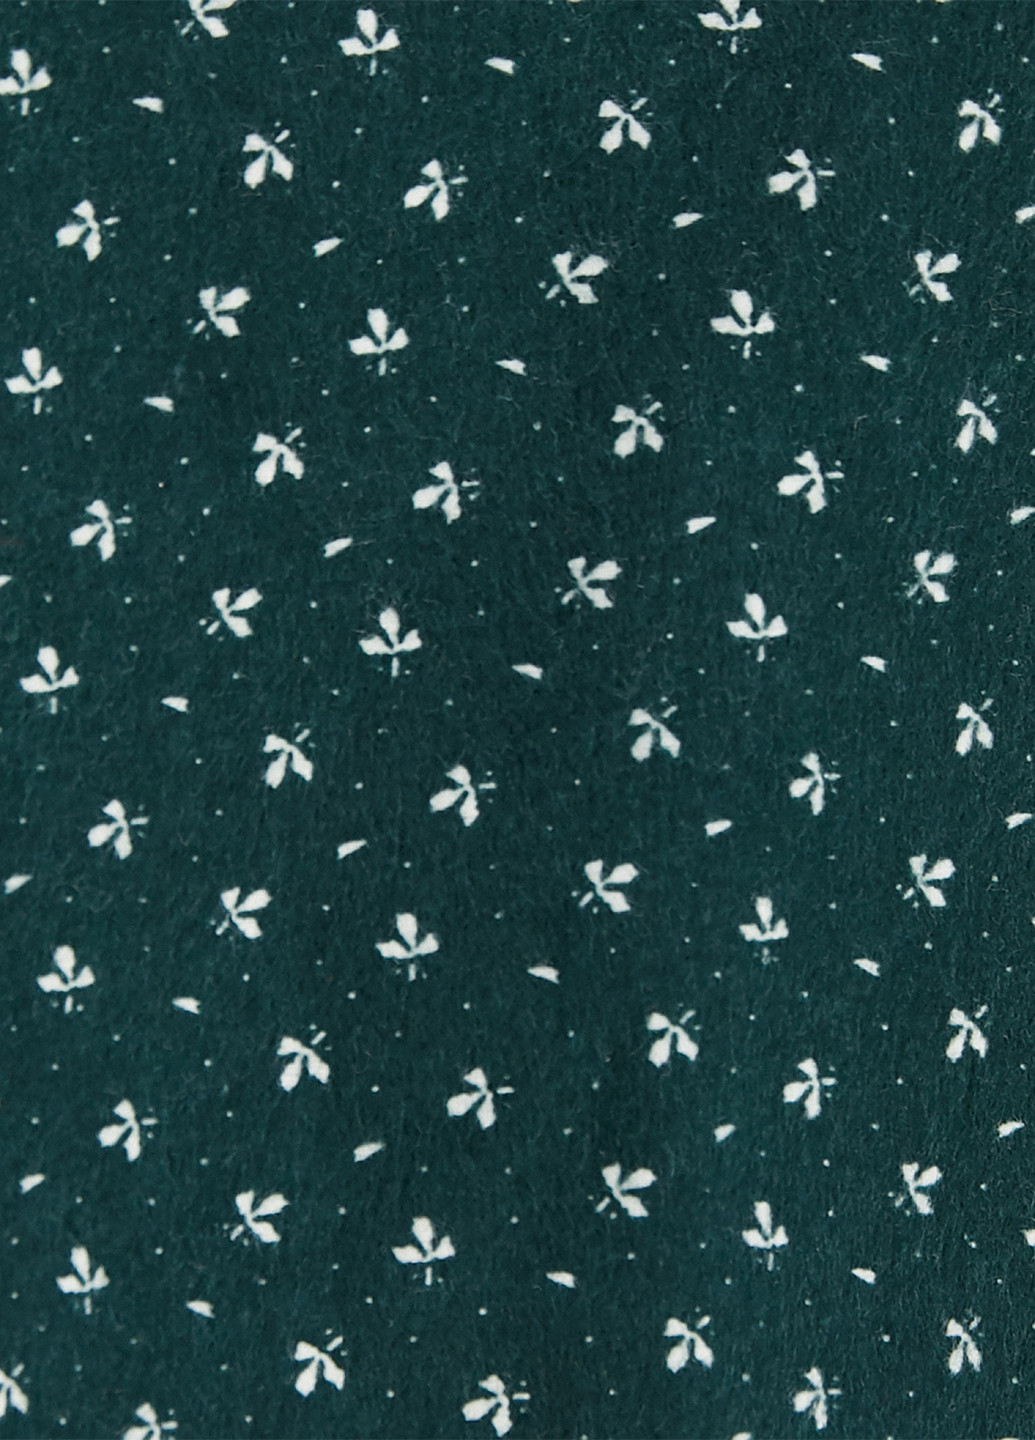 Темно-зеленая кэжуал цветочной расцветки юбка KOTON клешированная